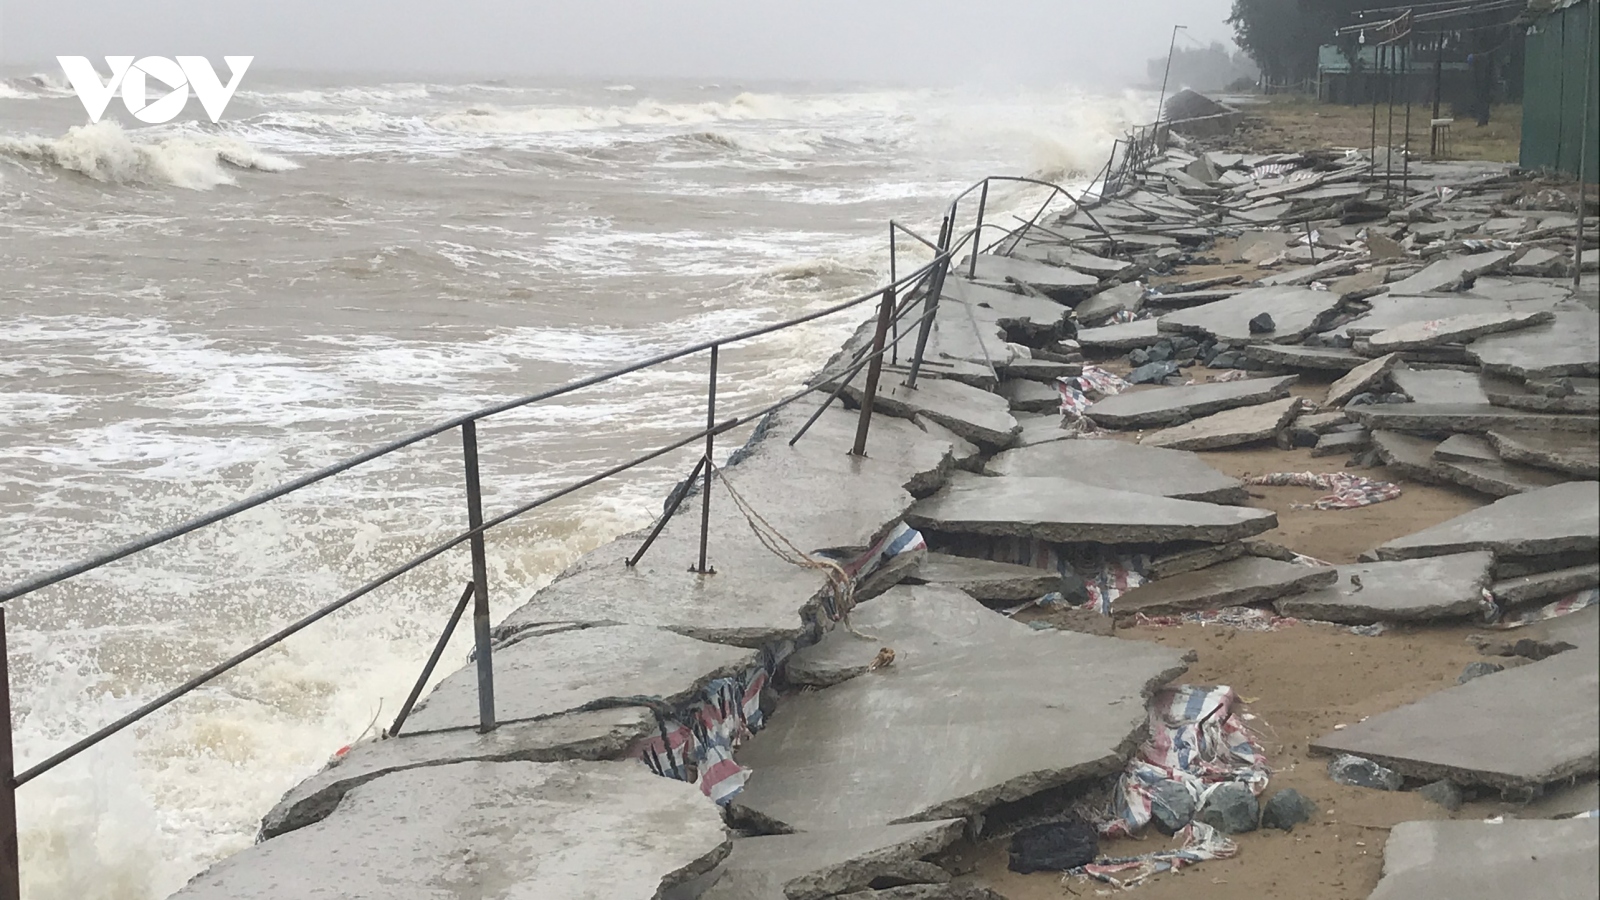 Hệ thống kè biển tan hoang, bê tông vỡ vụn sau bão dọc "phố biển" Cửa Lò